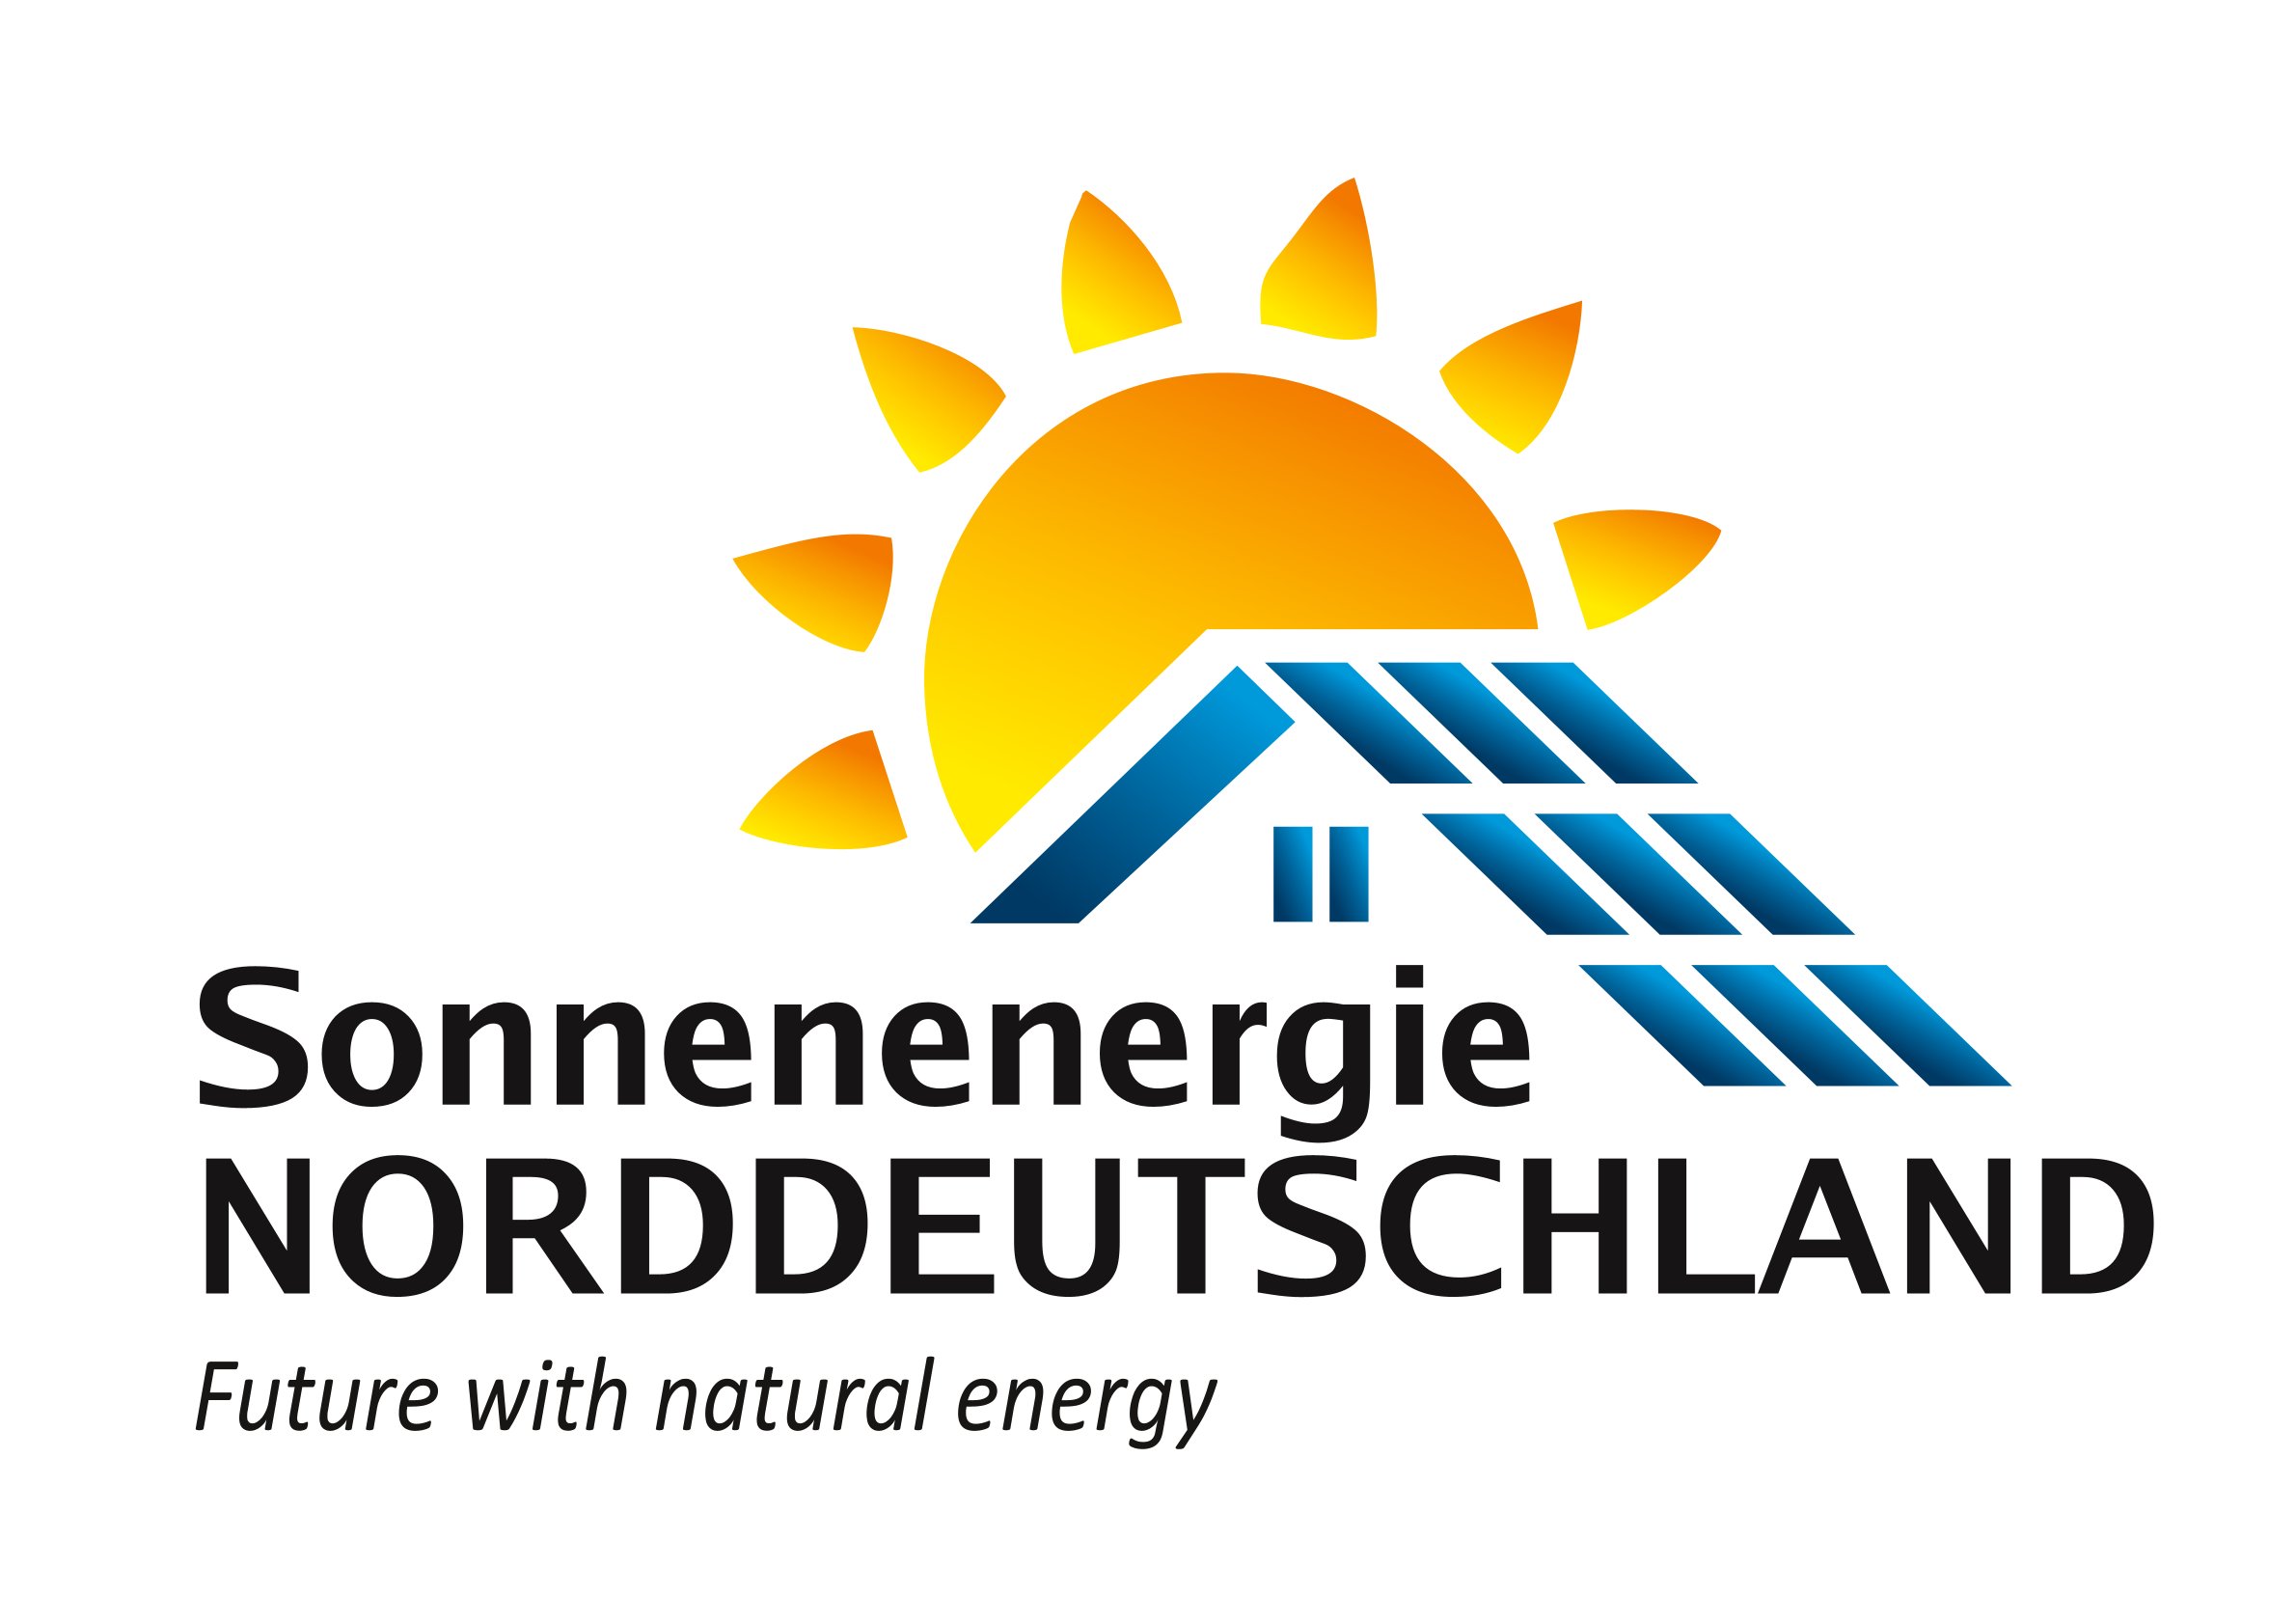 Sonnenenergie-norddeutschland-celle-Solarenergie-PVAnlage